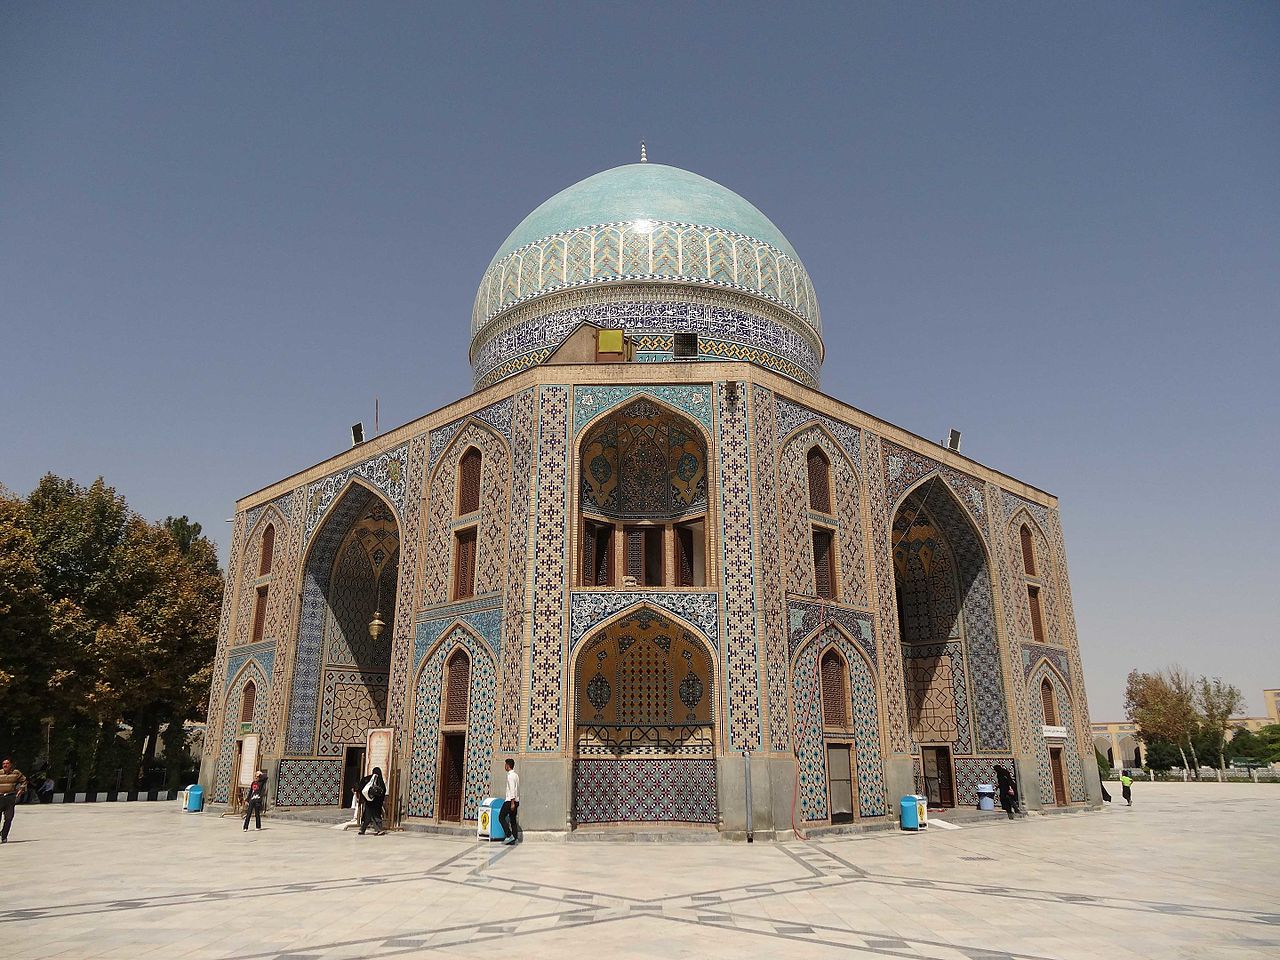 Verdensarven Khajeh Rabi Mausoleum er fra 1500-tallet og ligger i Mashhad i provinsen Khorasan Razavi nordøst i Iran. Mausoleet har praktfulle mosaikker og fantastisk innvendig dekor. Foto: Alireza Khorsandi (CC BY-SA 4.0) via Wikimedia commons